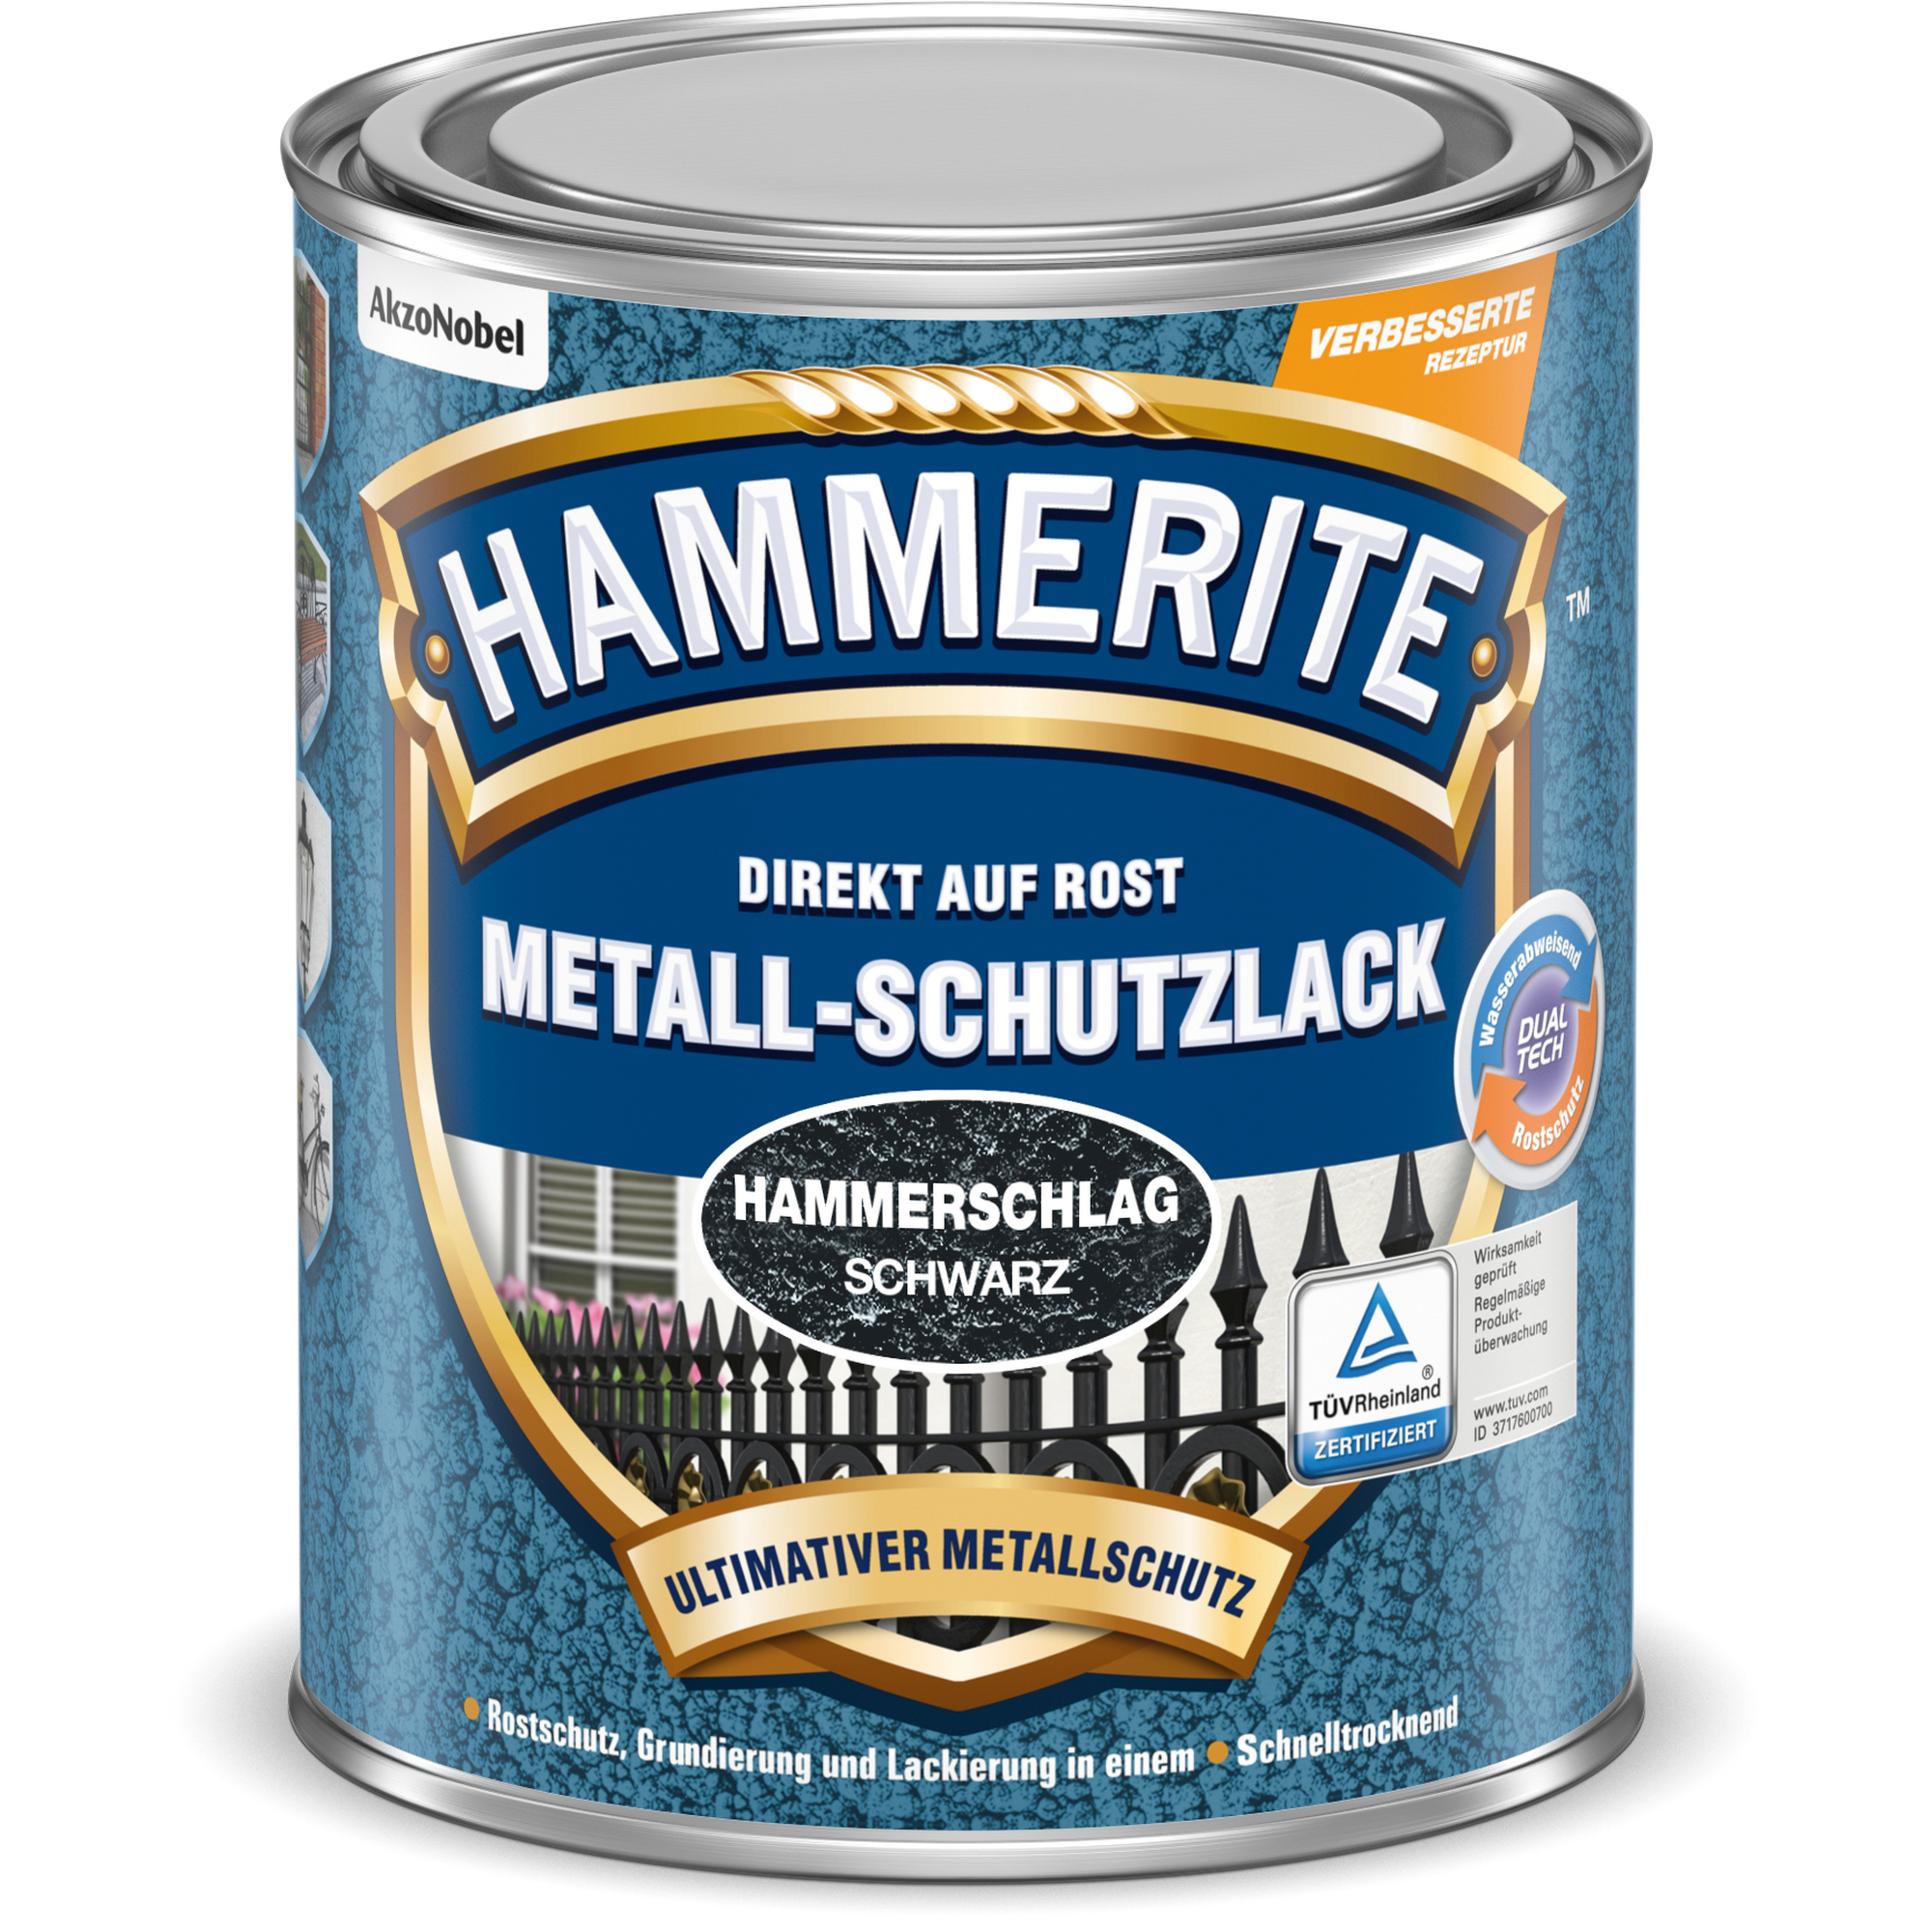 Metallschutzlack Hammerschlag-Effekt schwarz 750 ml + product picture